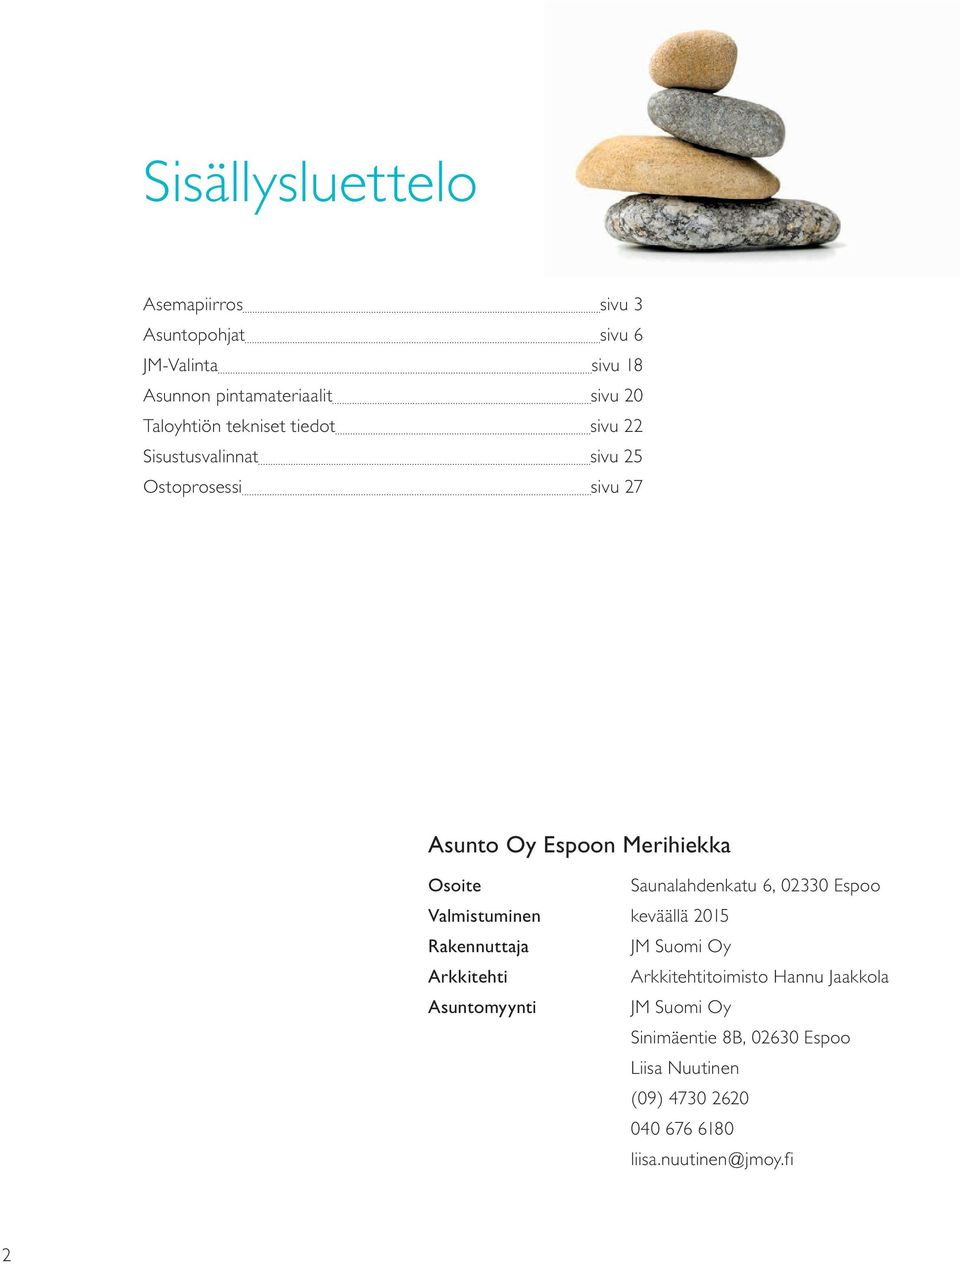 Saunalahdenkatu 6, 02330 Espoo Valmistuminen keväällä 2015 Rakennuttaja JM Suomi Oy Arkkitehti Arkkitehtitoimisto